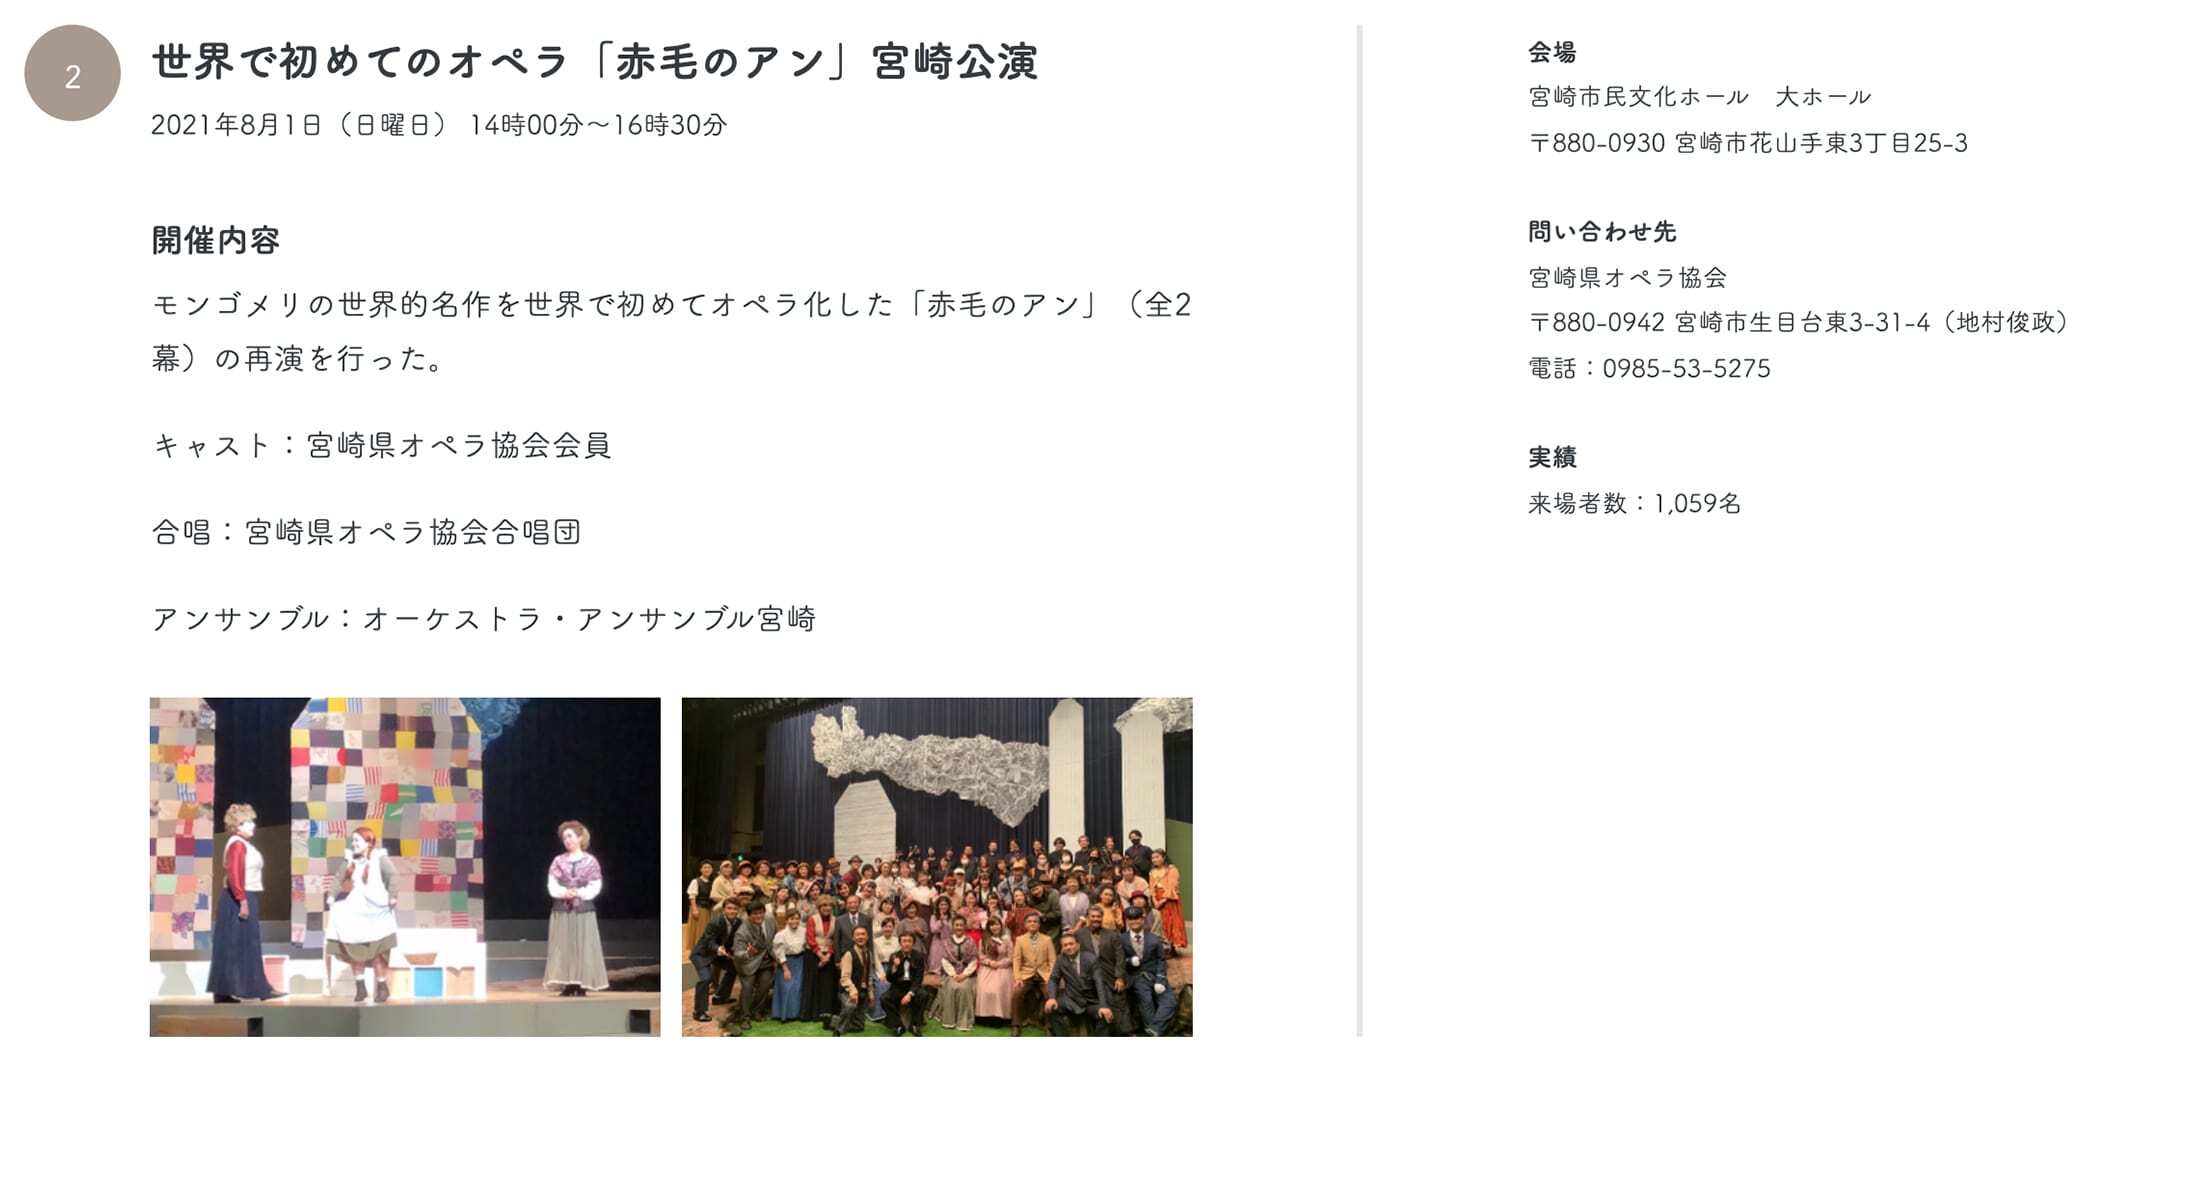 2世界で初めてのオペラ「赤毛のアン」宮崎公演